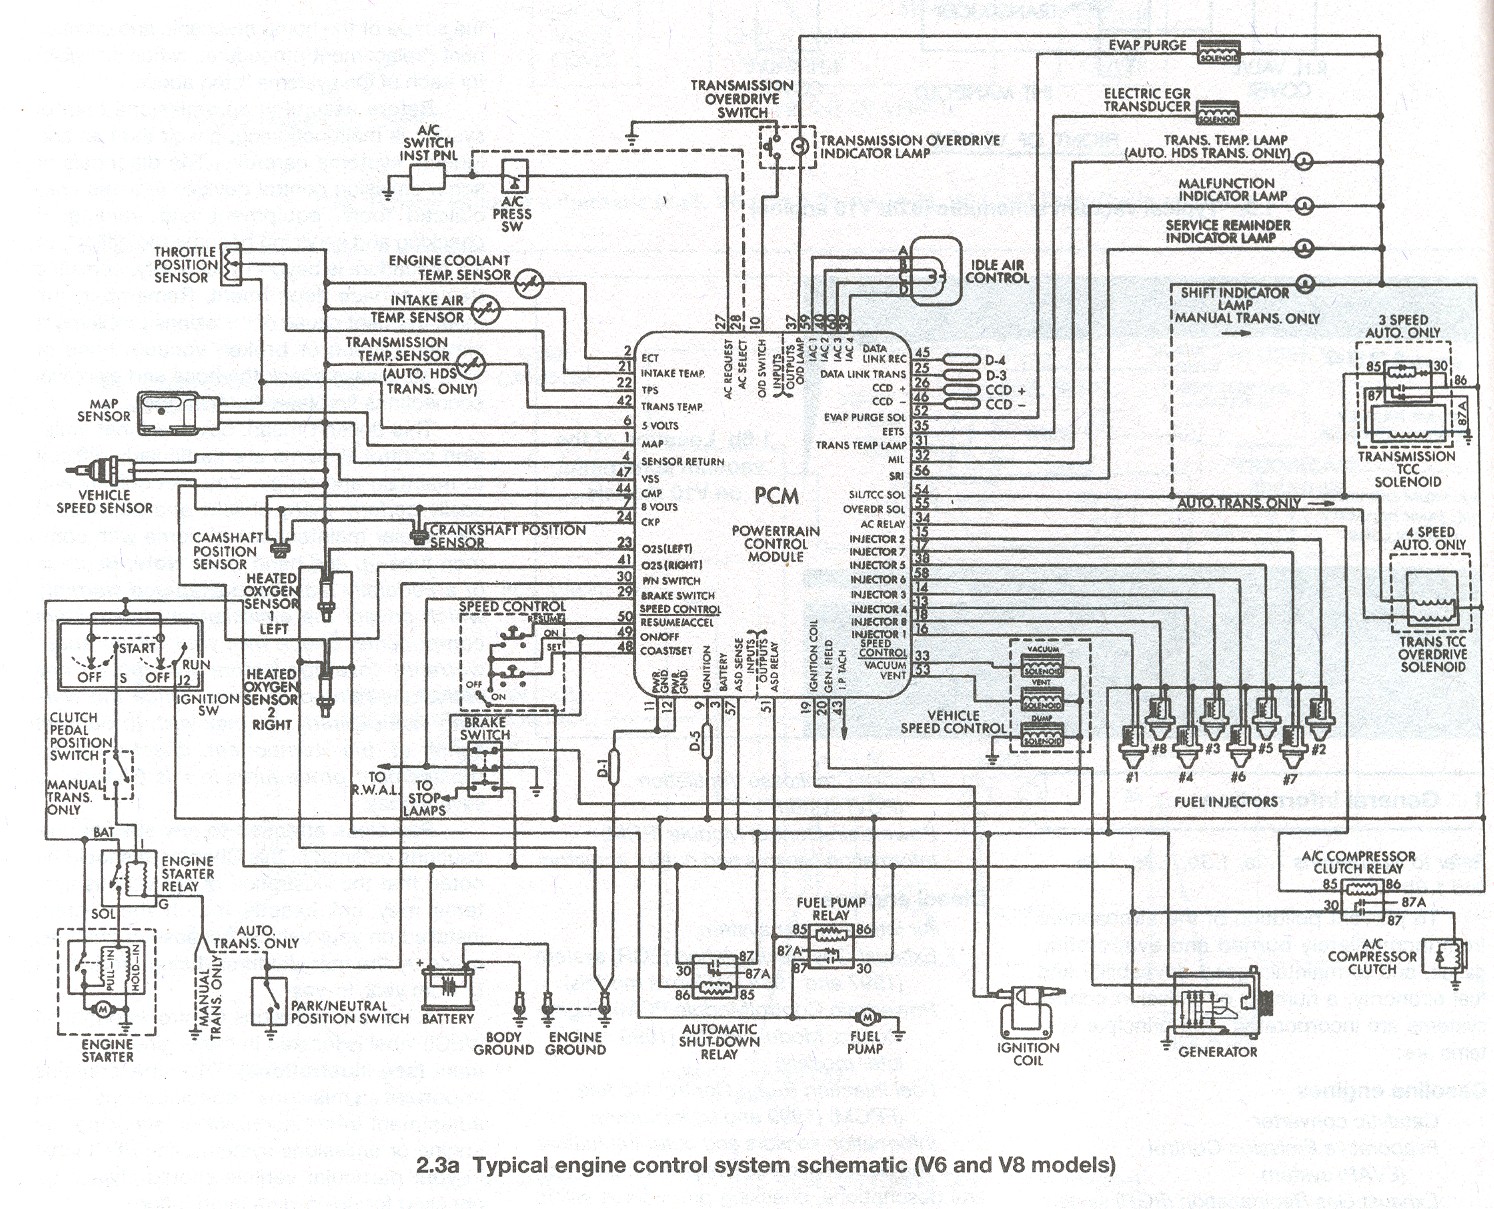 1973 Dodge Dart Wiring Diagram from schematron.org